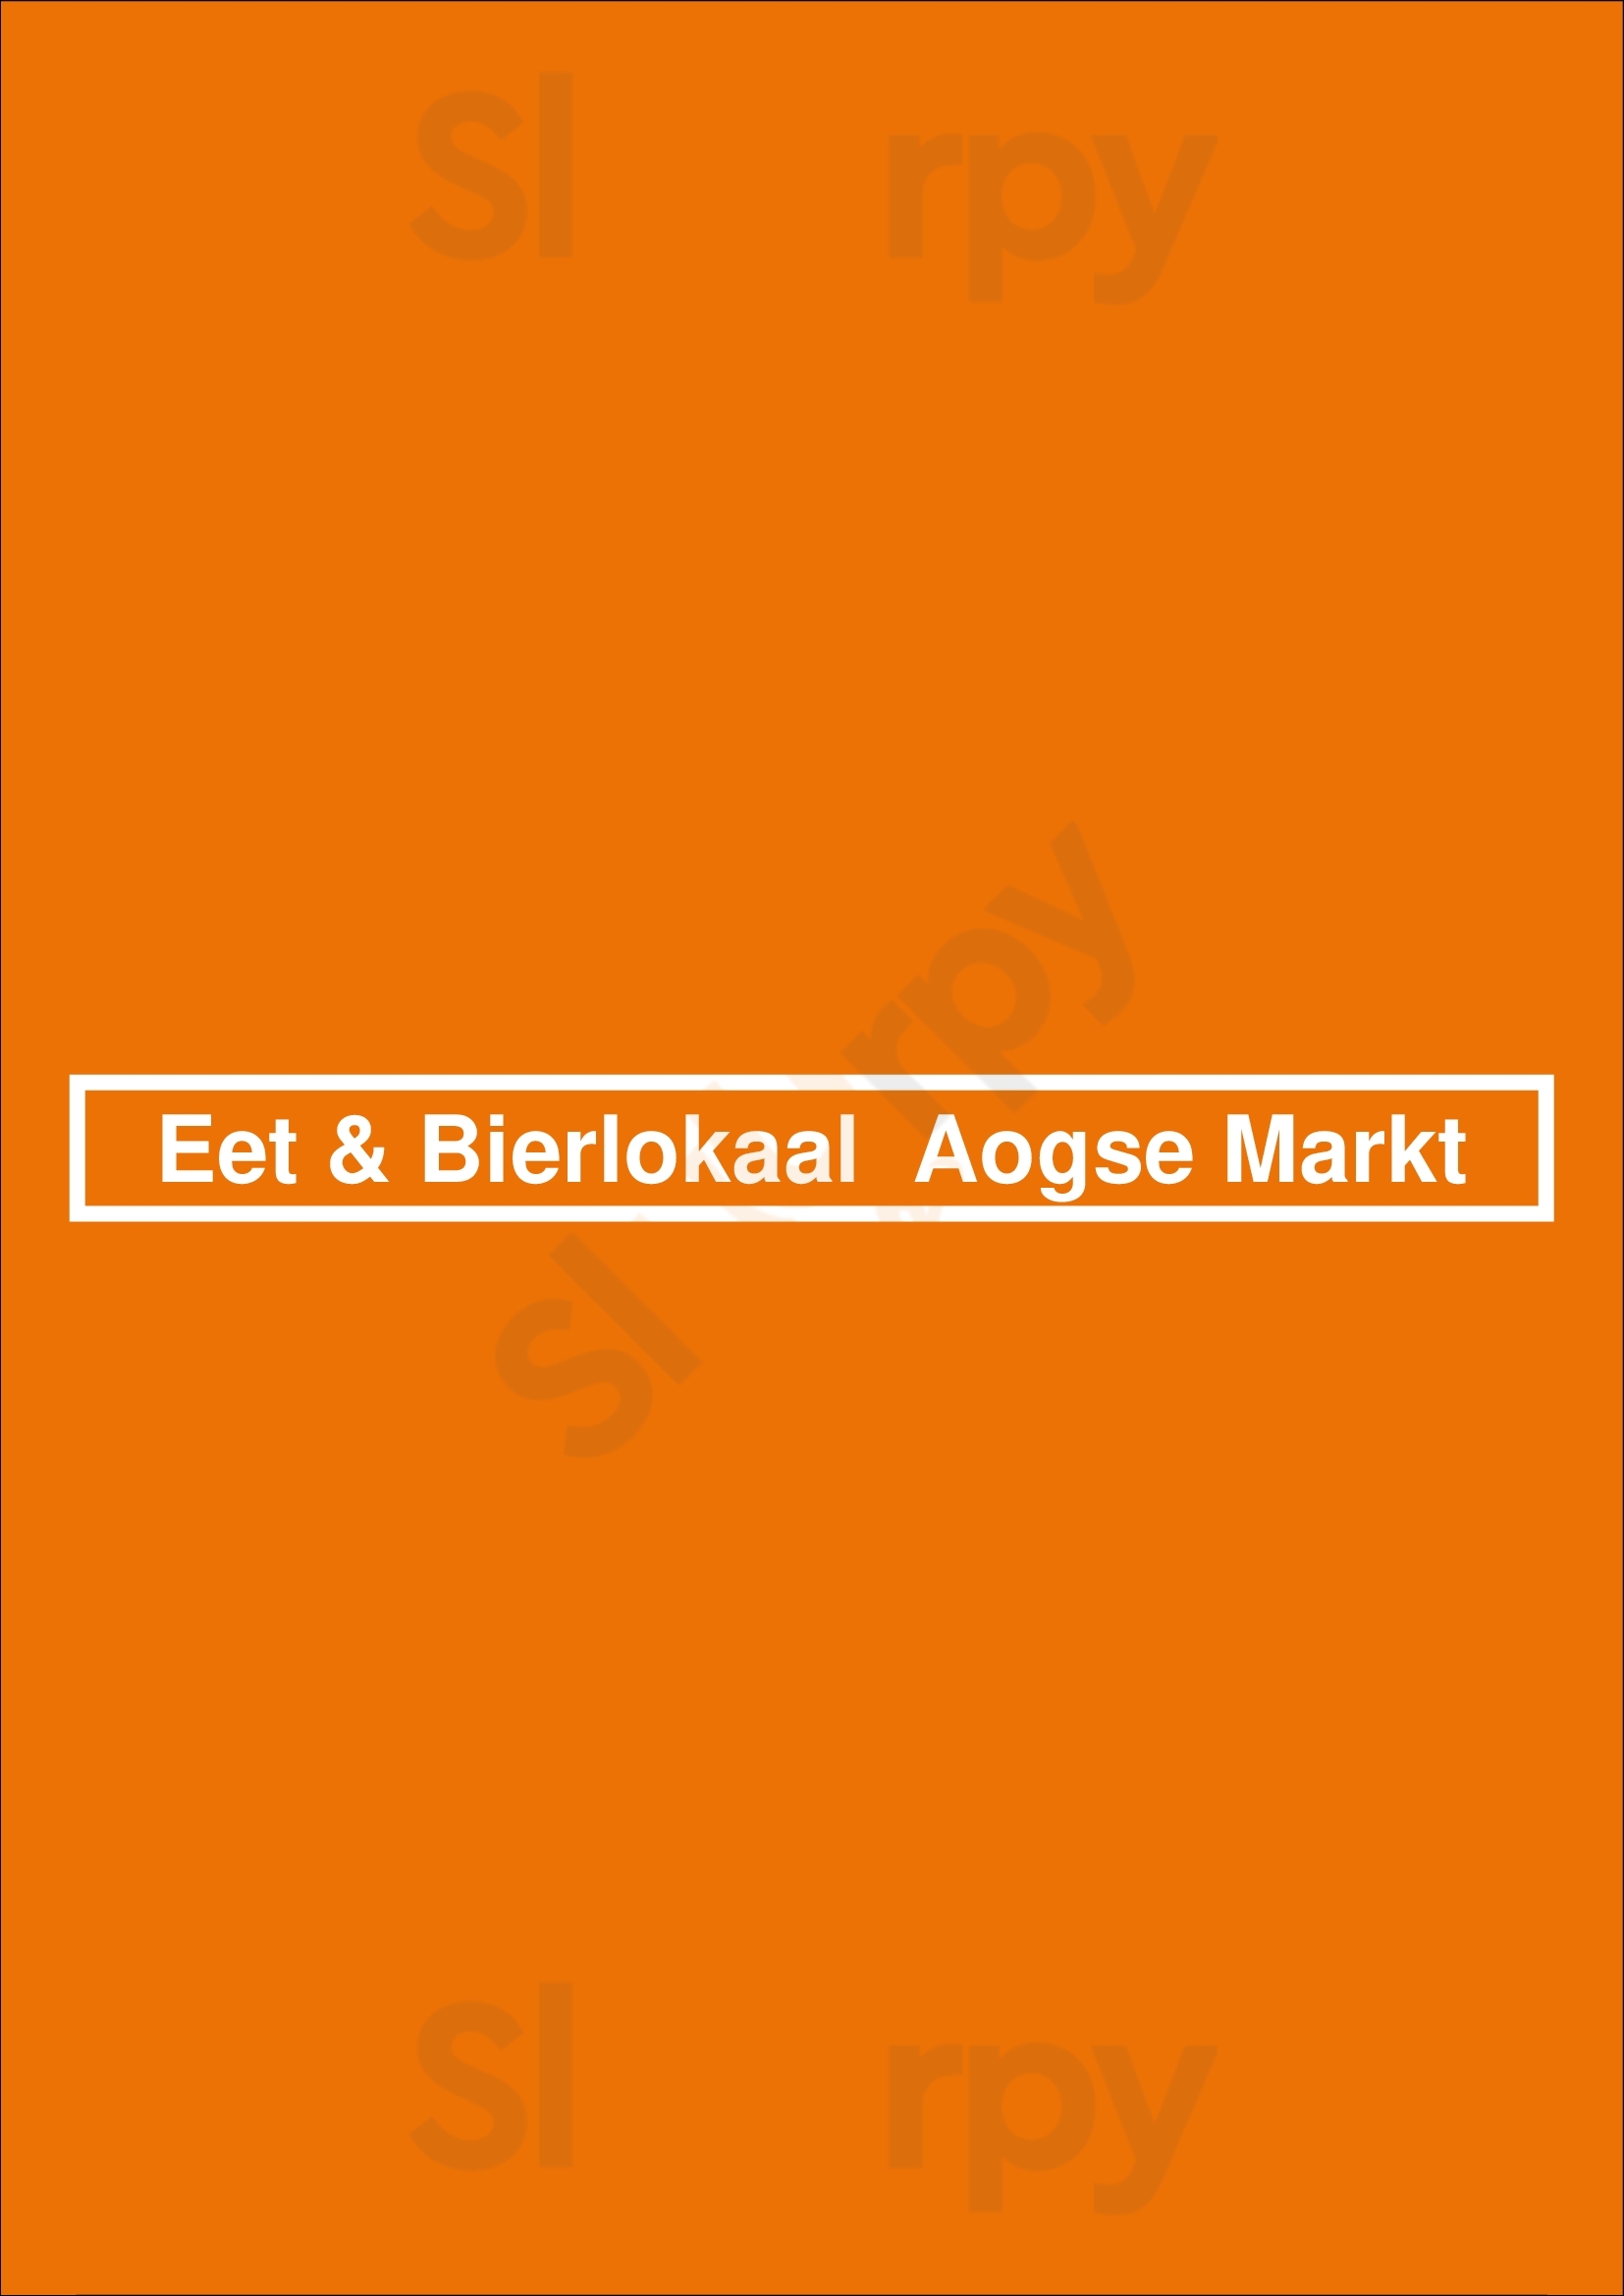 Eet & Bierlokaal  Aogse Markt Breda Menu - 1